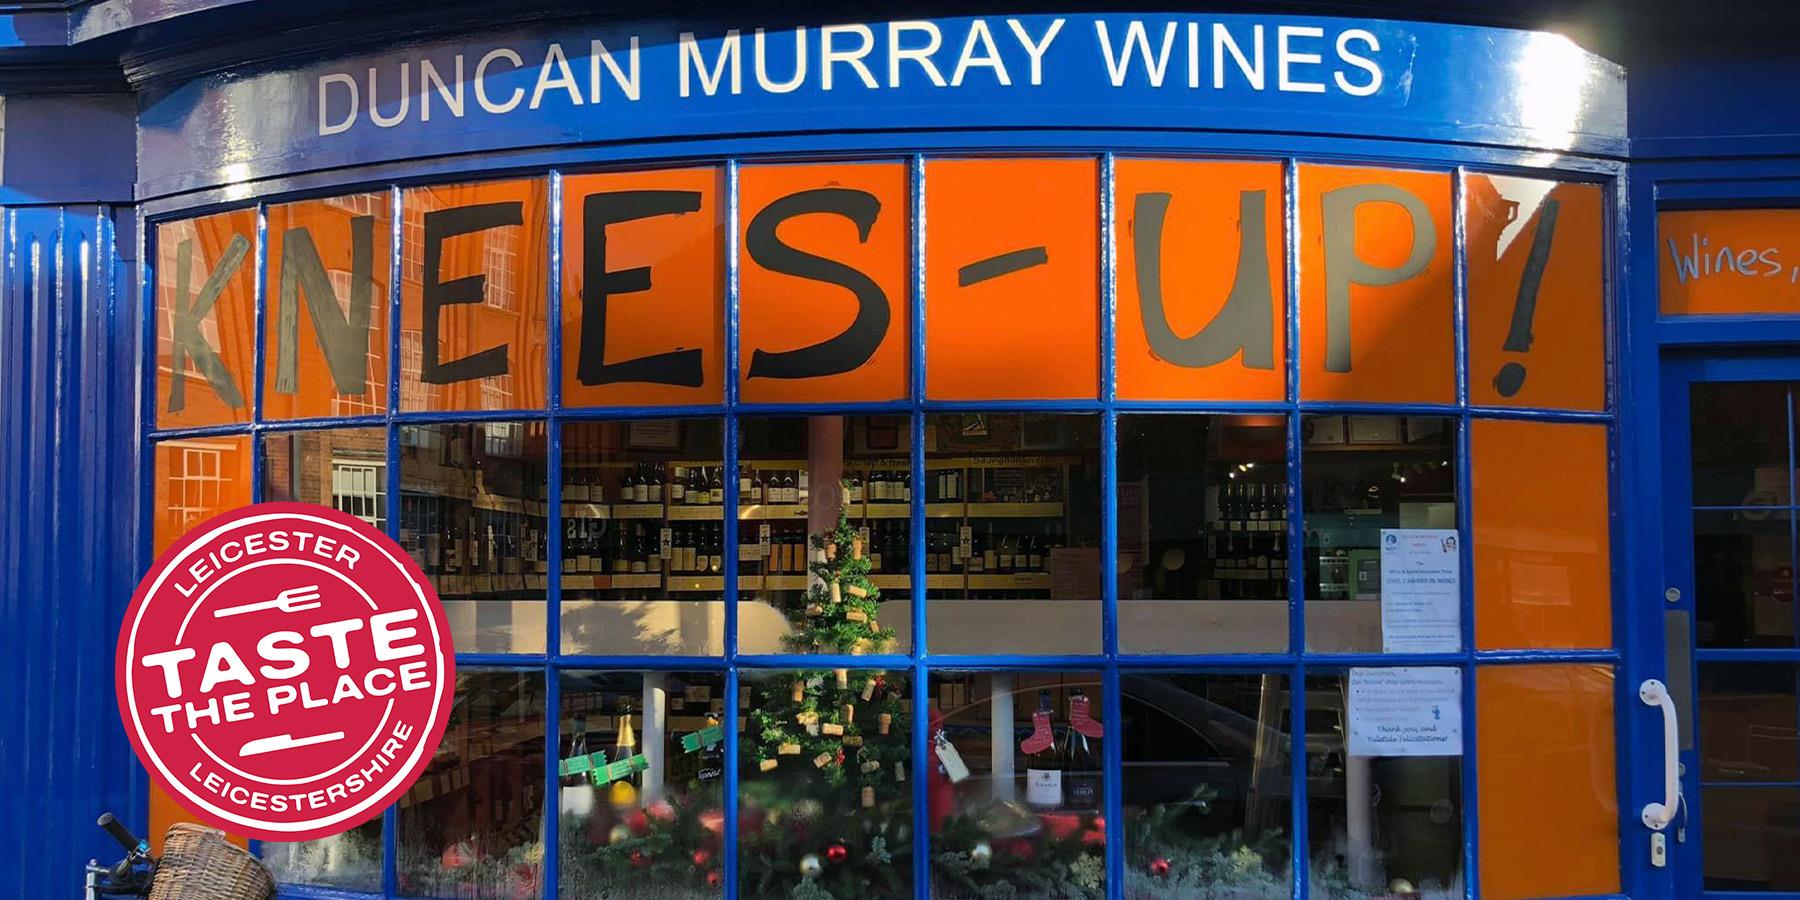 Duncan Murray Wines’ Tasting Evenings